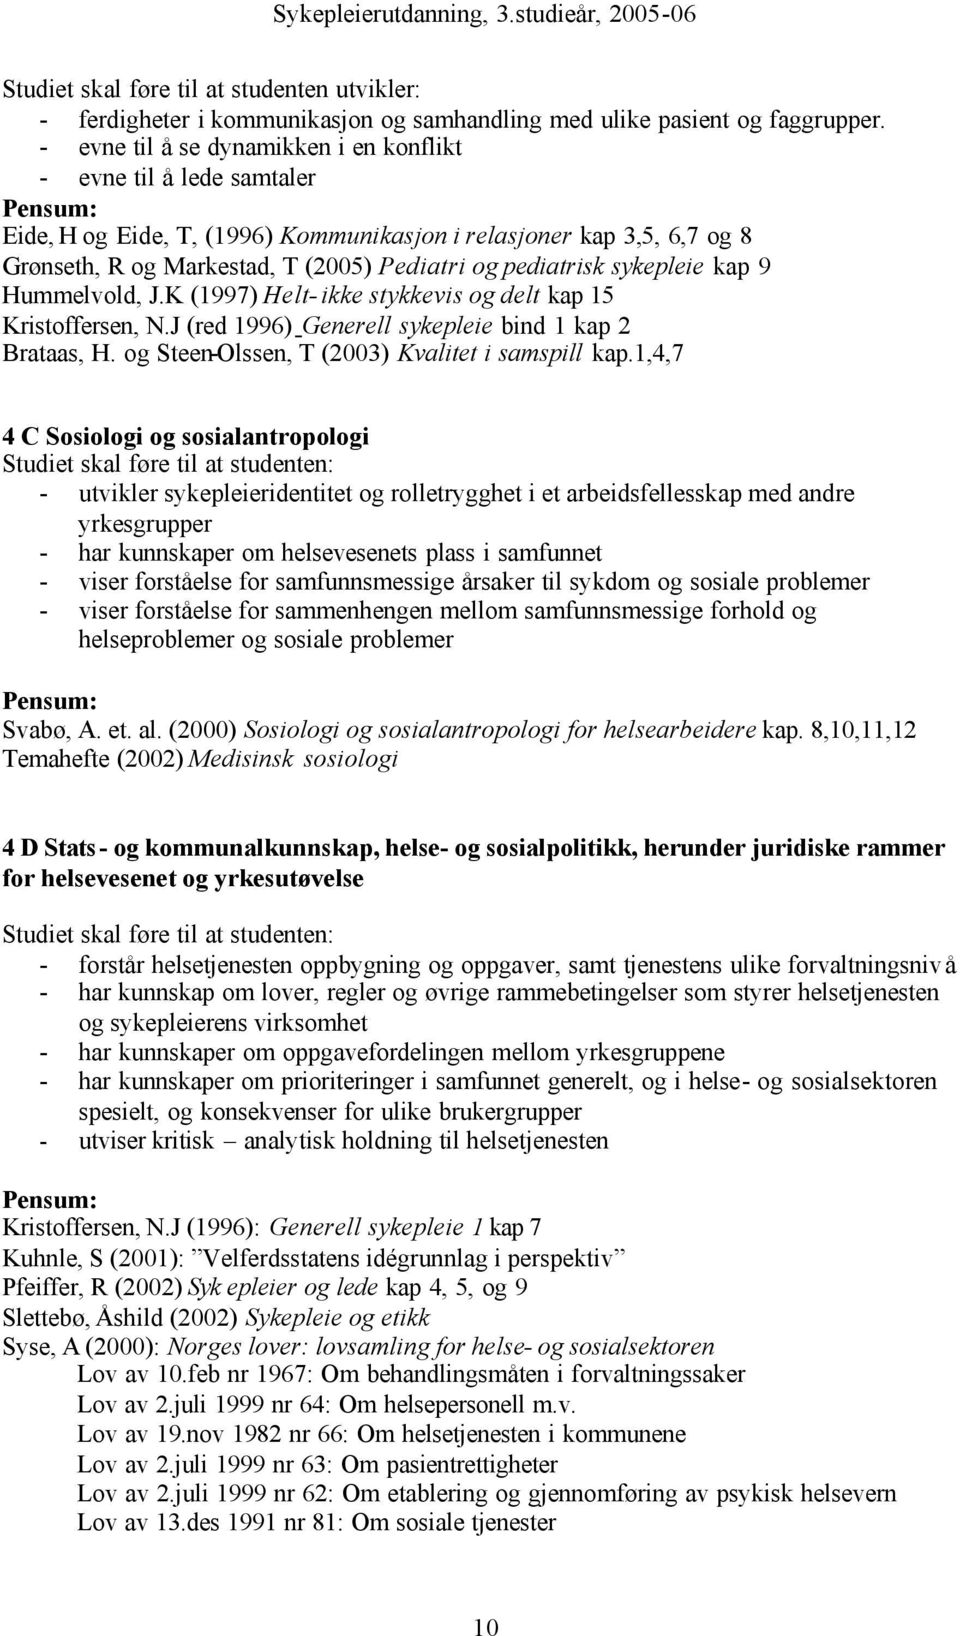 sykepleie kap 9 Hummelvold, J.K (1997) Helt- ikke stykkevis og delt kap 15 Kristoffersen, N.J (red 1996) Generell sykepleie bind 1 kap 2 Brataas, H. og Steen-Olssen, T (2003) Kvalitet i samspill kap.